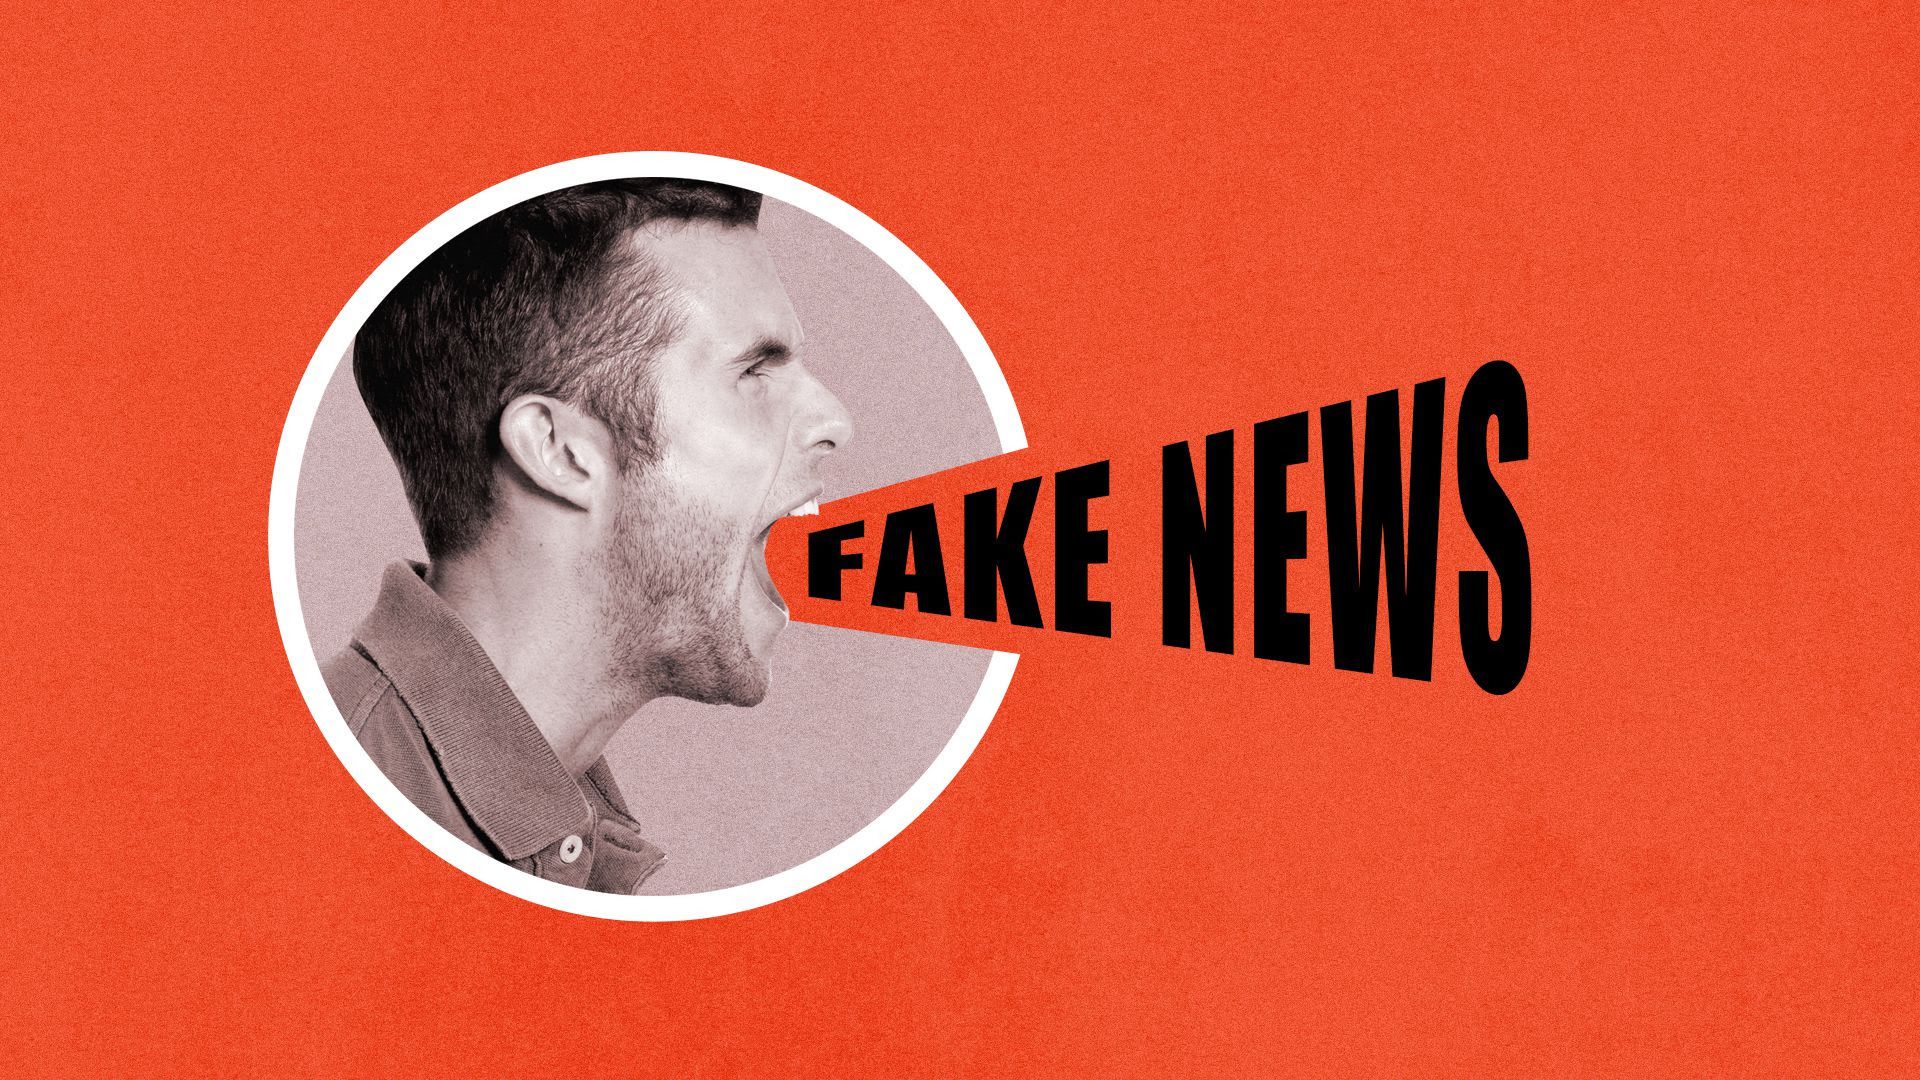 Illustration of man screaming "Fake News"